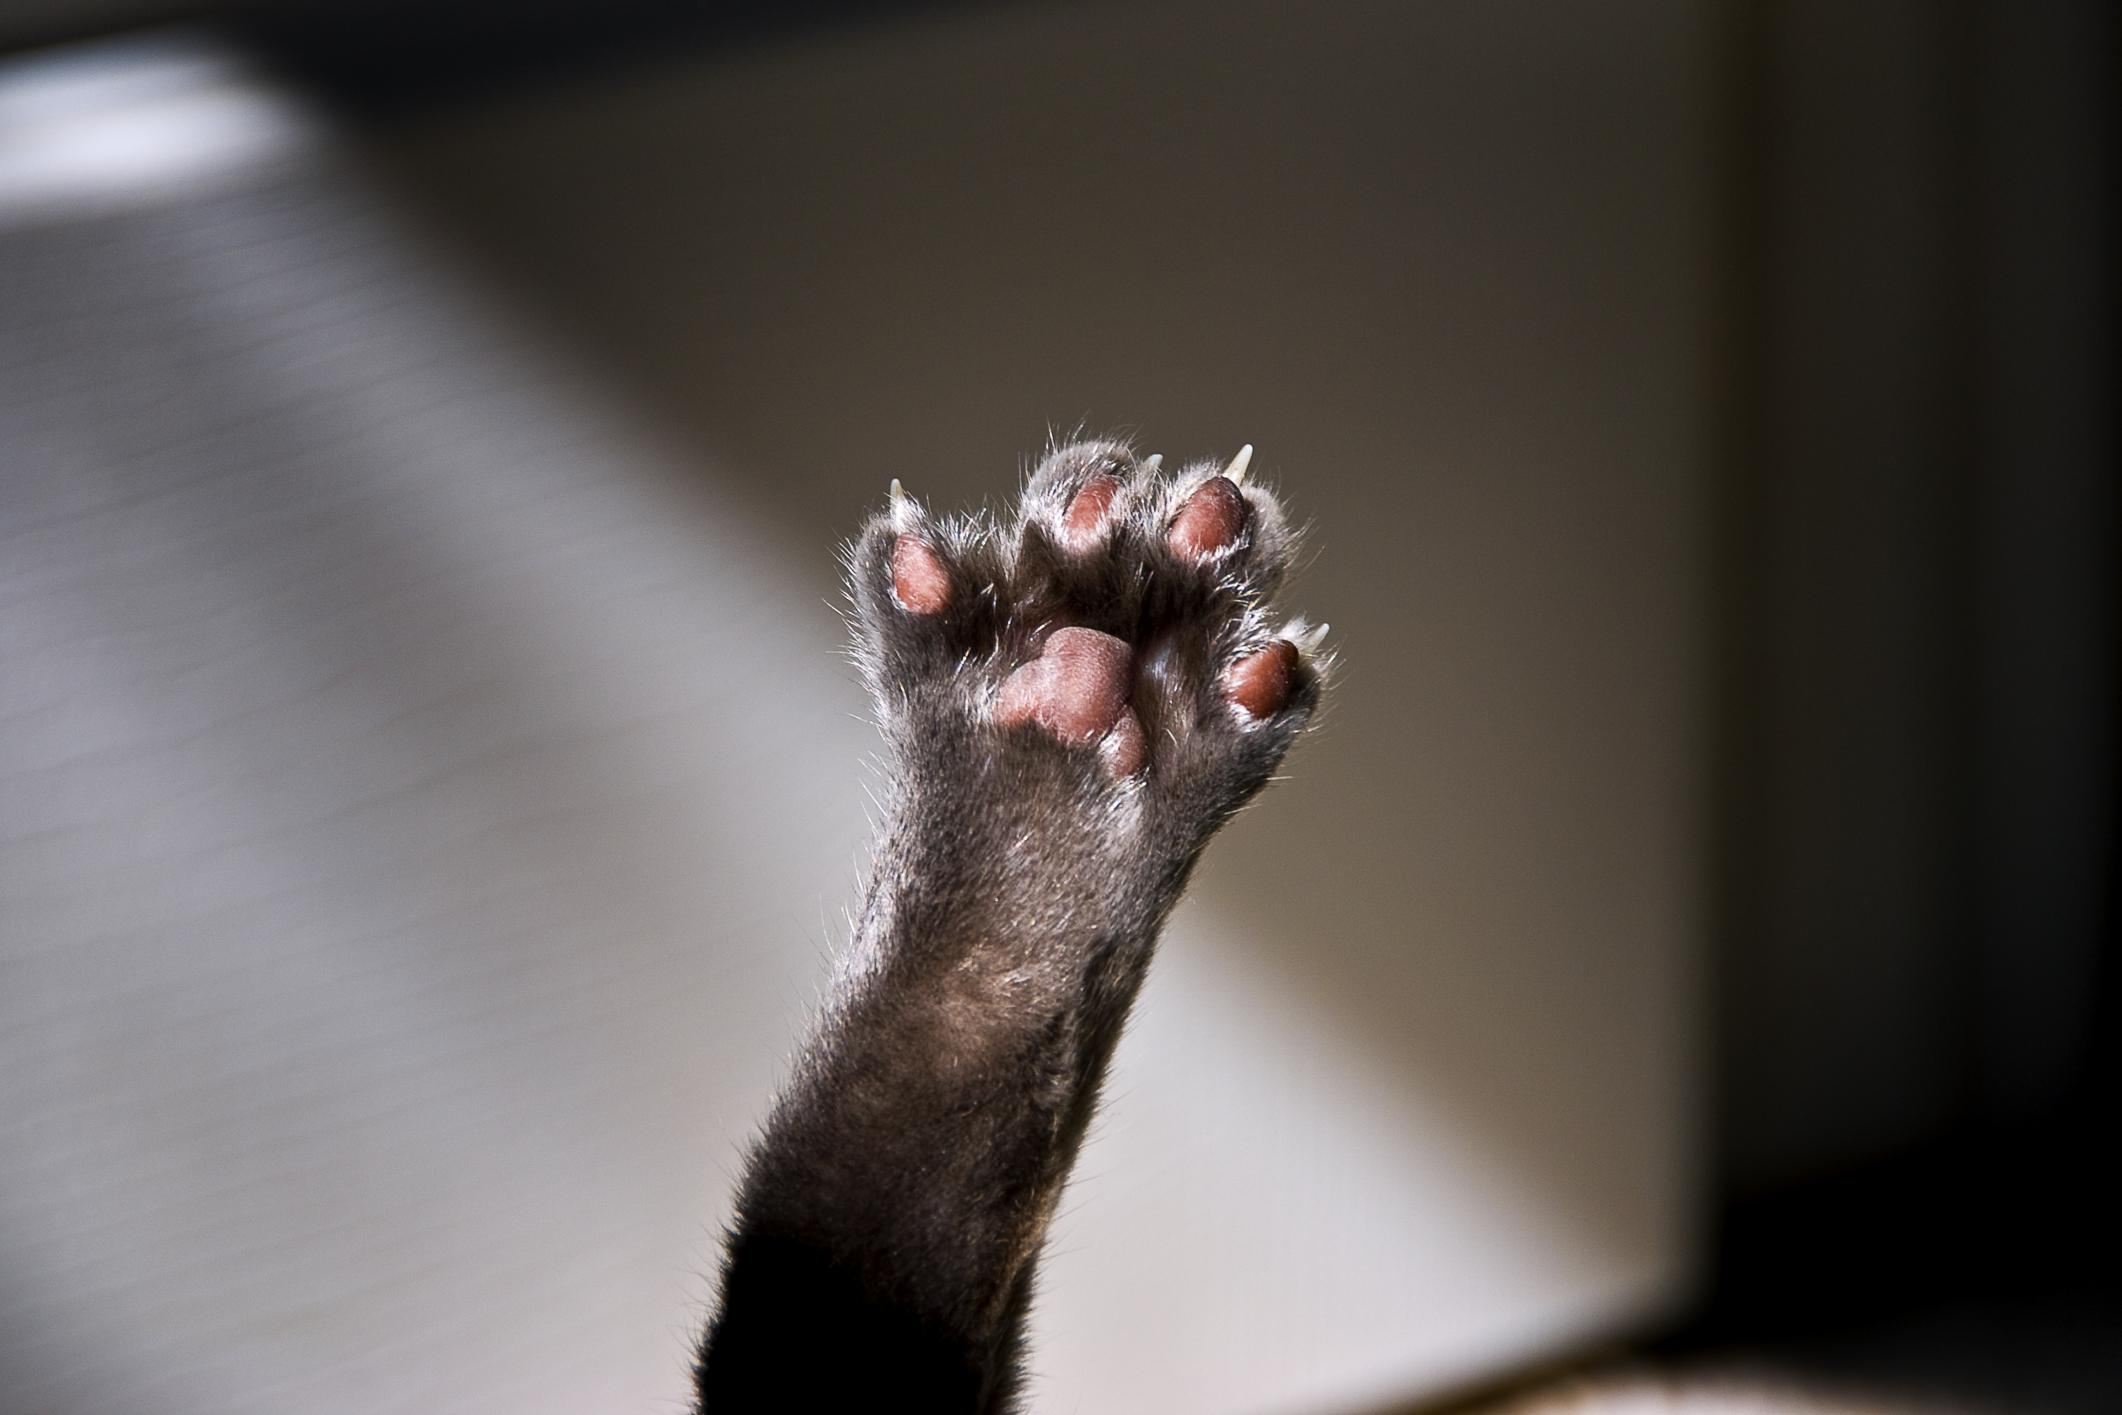 Cat's paw raised in air